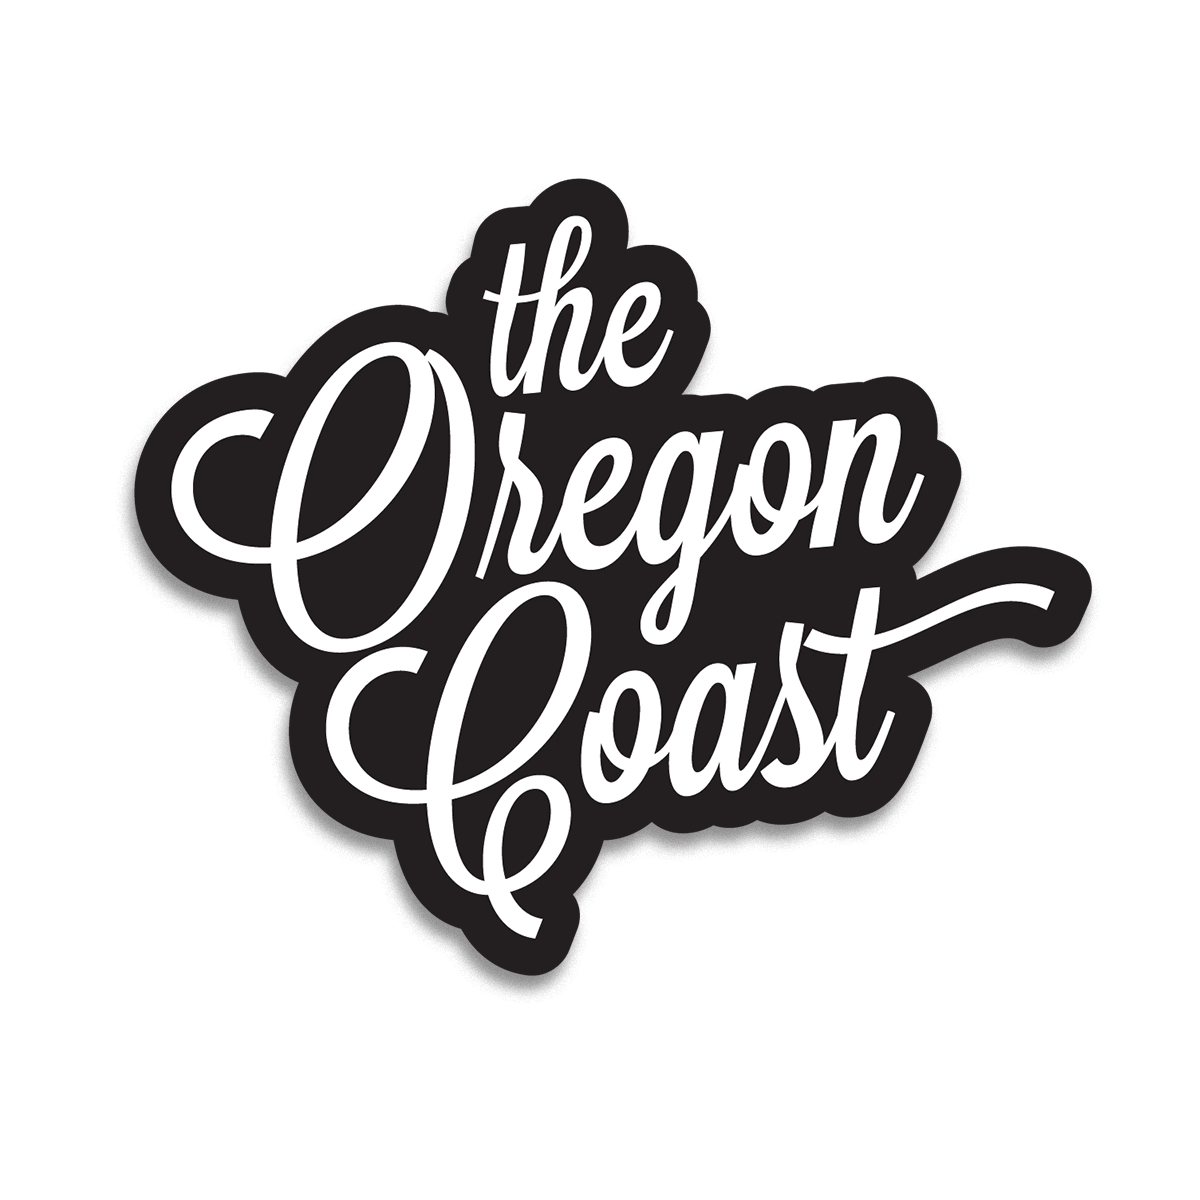 "The Oregon Coast" 4inch Script Sticker (3 color options) The Oregon